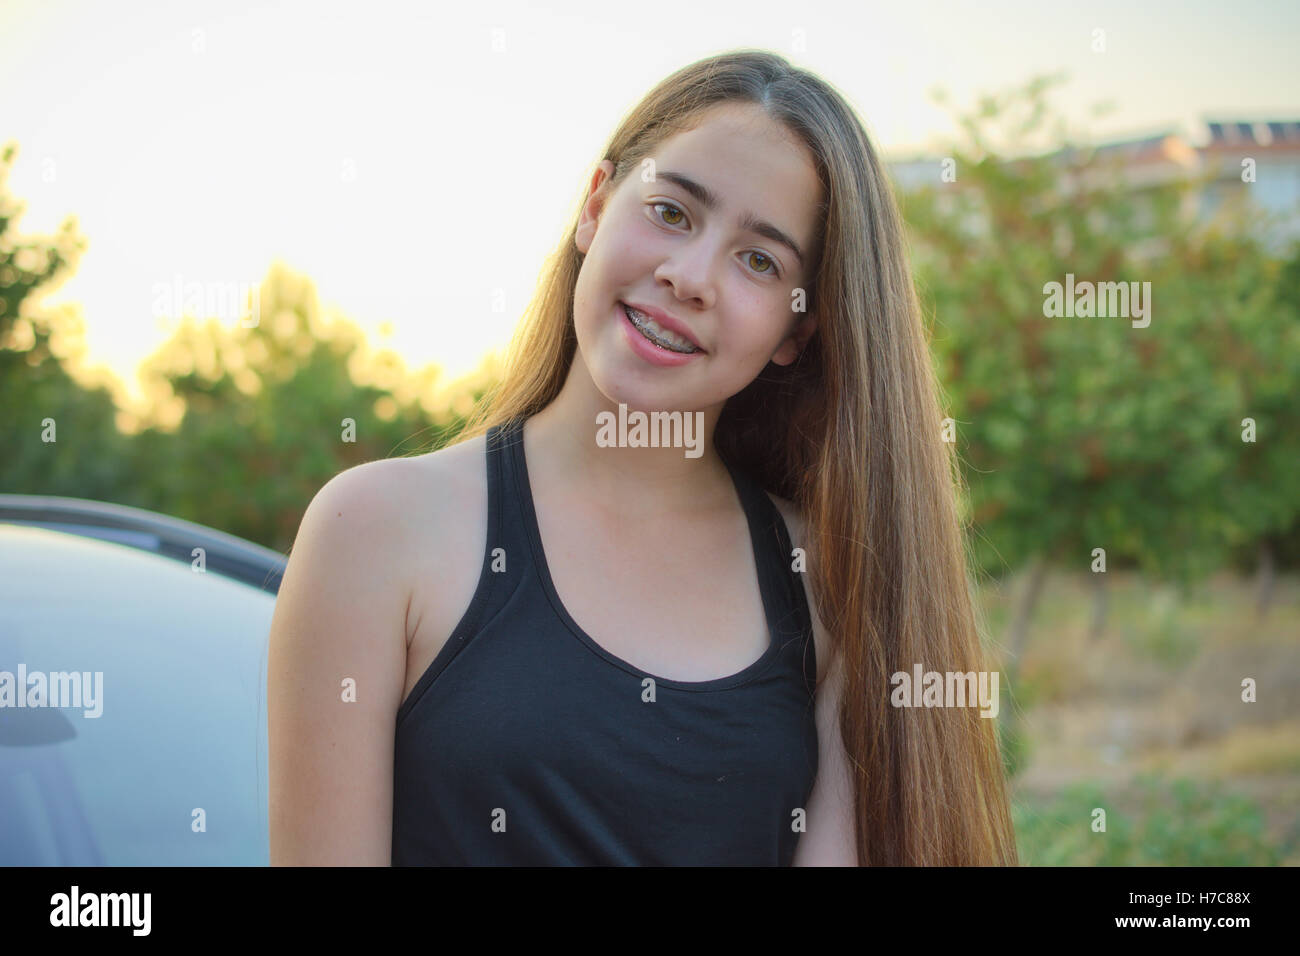 A 13 anni ragazza adolescente con rinforzi su i suoi denti seduto su una vettura godendo l'estate israeliano tramonto Foto Stock